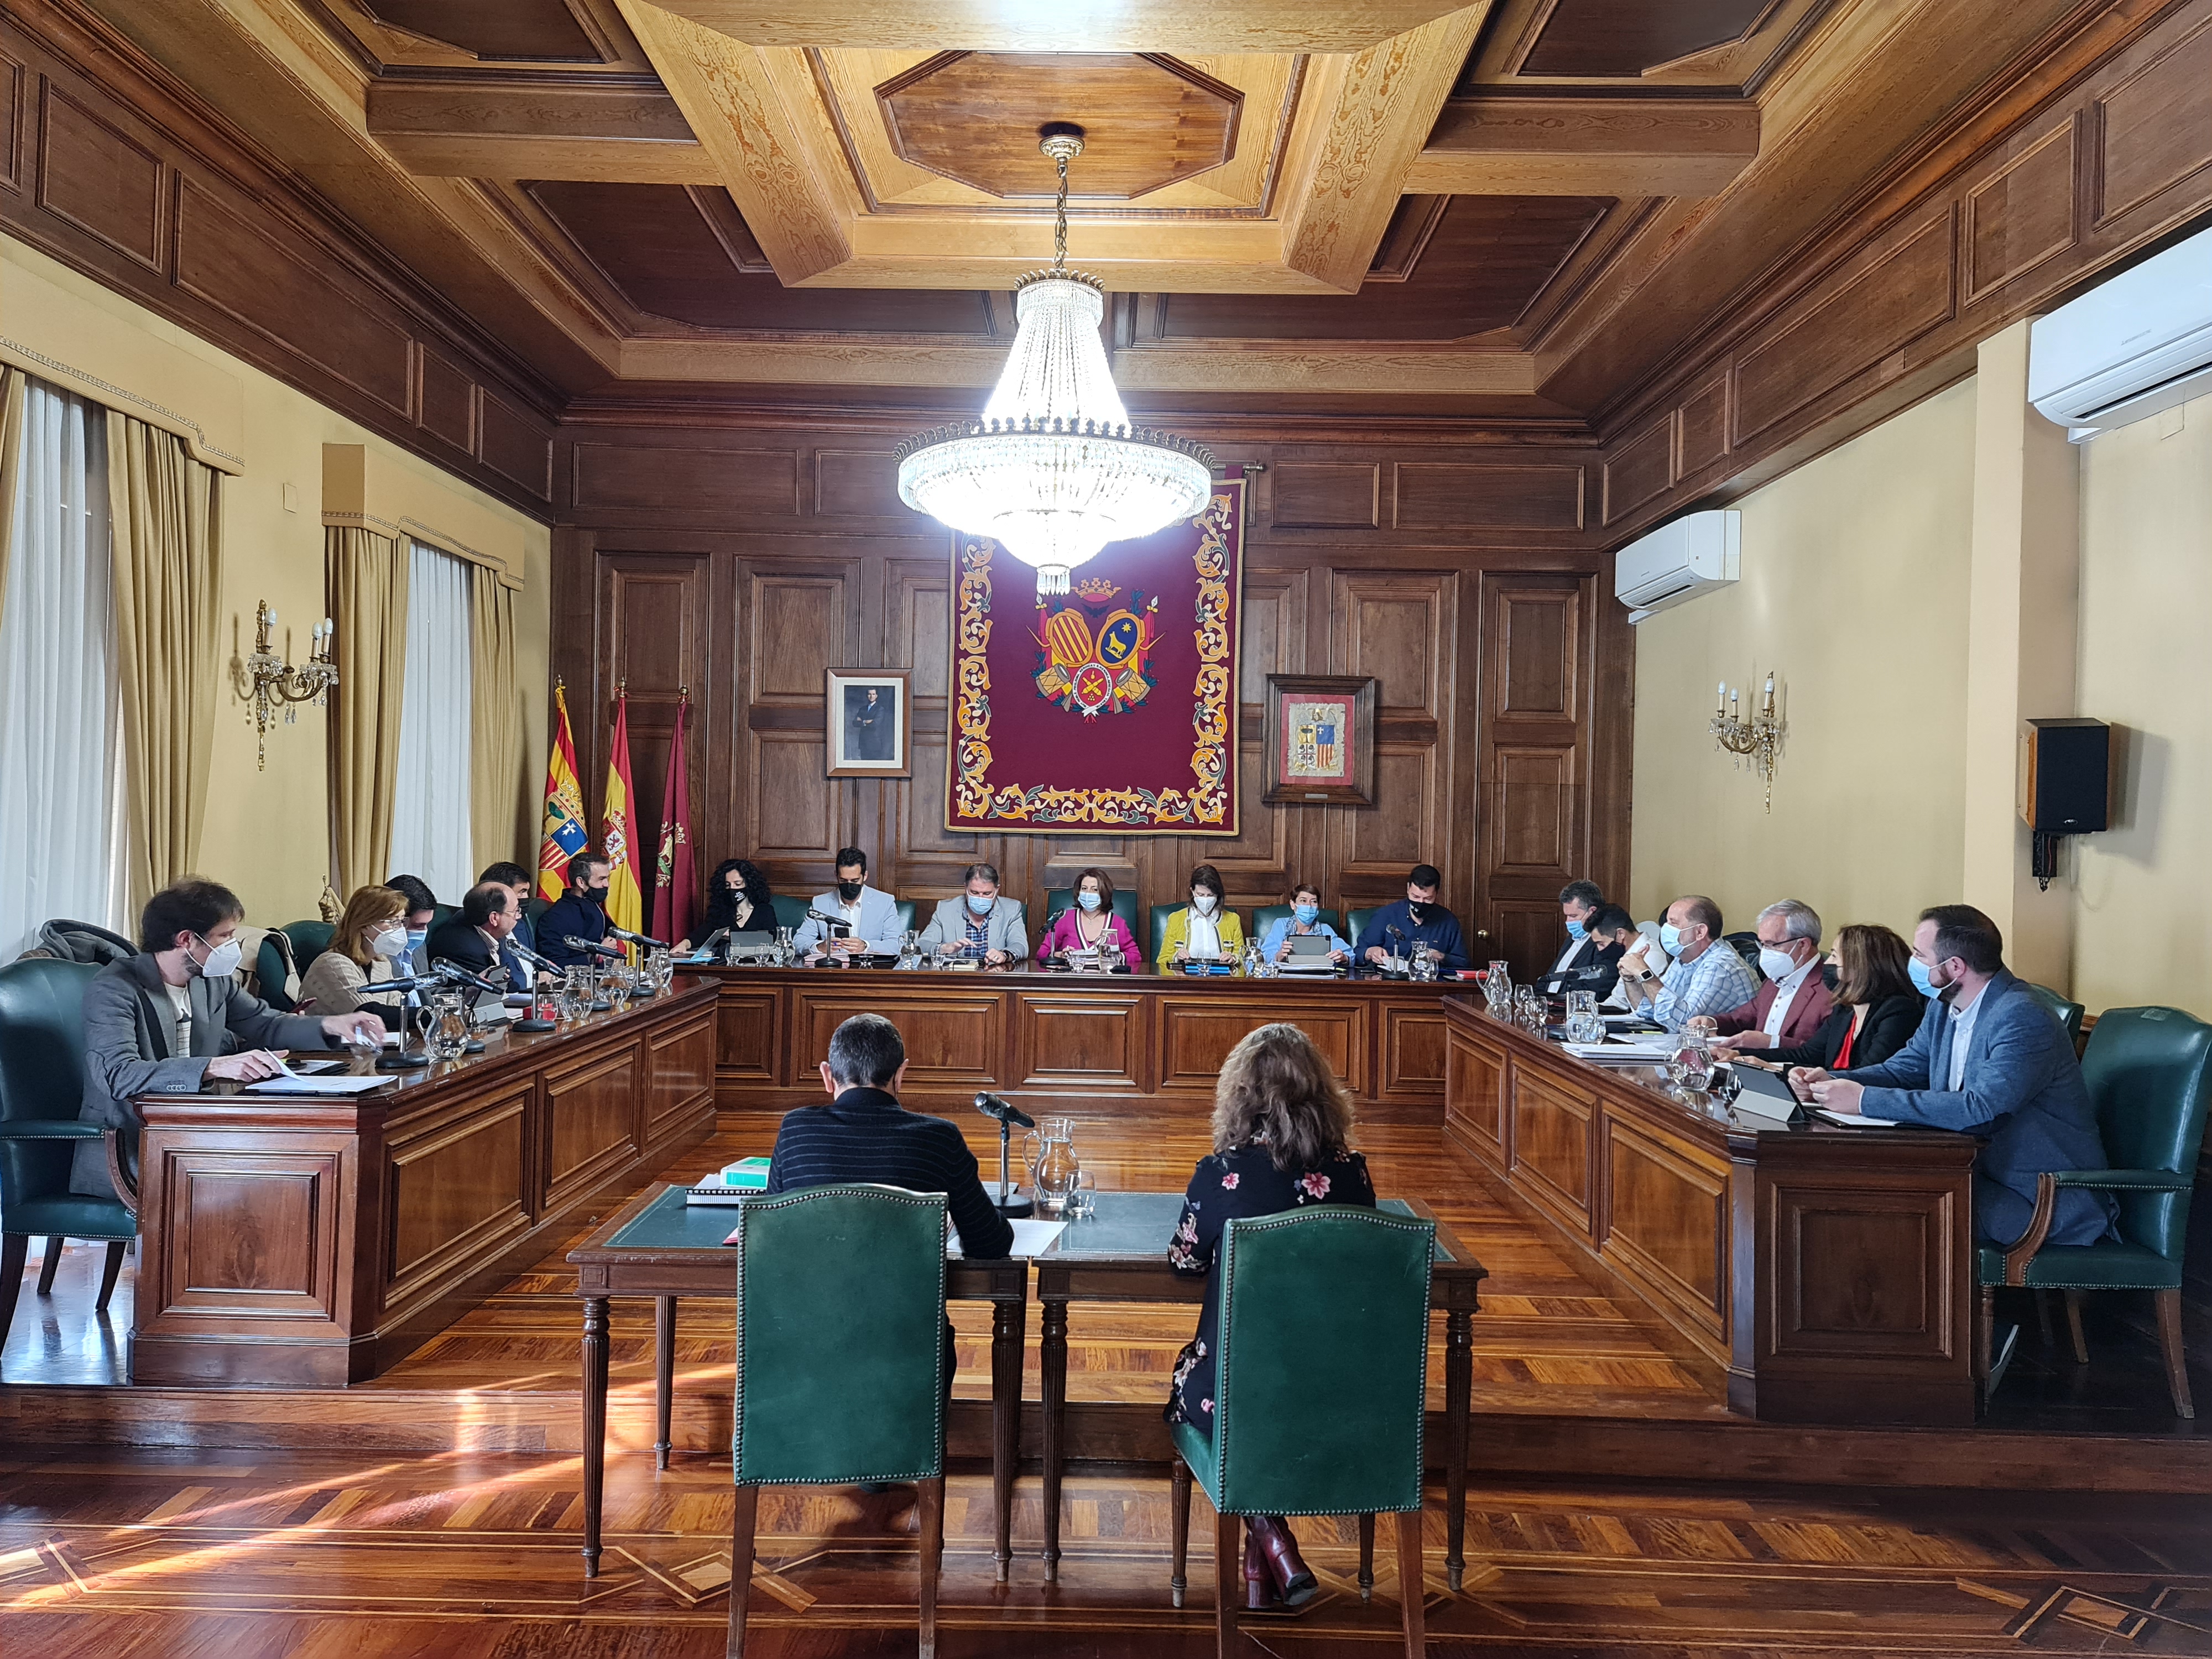 El pleno del Ayuntamiento de Teruel recupera el formato anterior a la pandemia de coronavirus, aunque usando la mascarilla